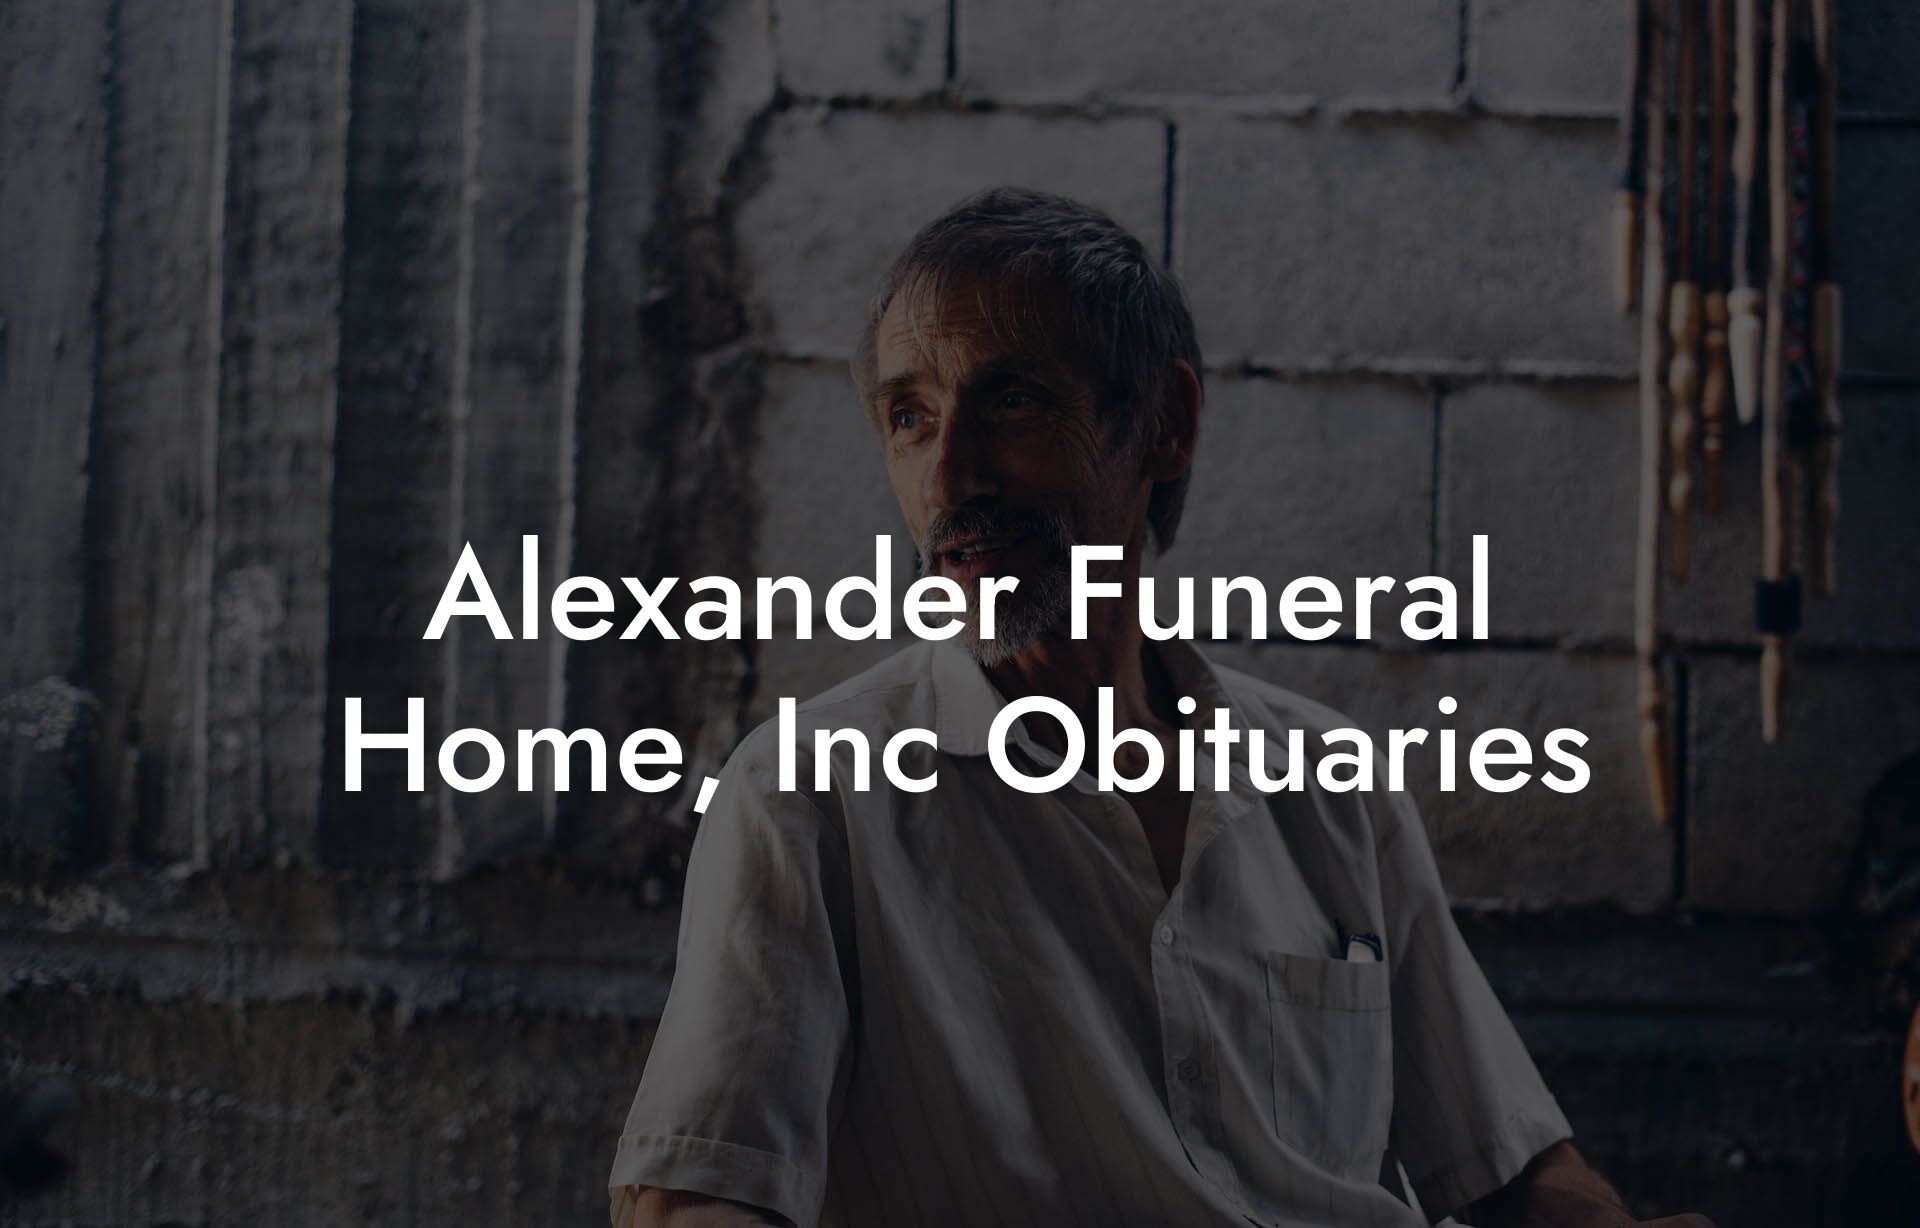 Alexander Funeral Home, Inc Obituaries